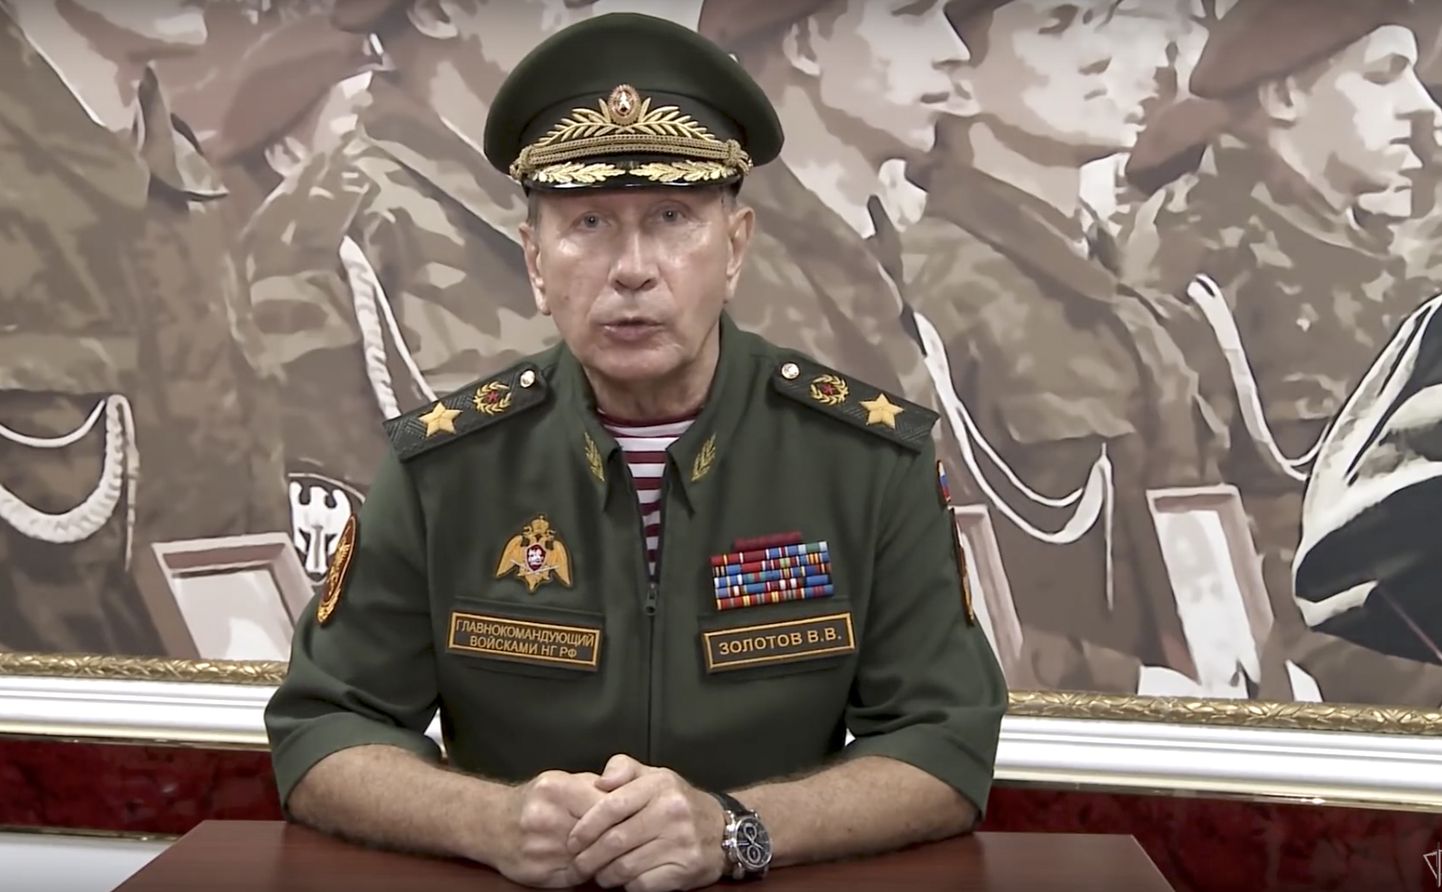 Vene rahvuskaardi ülem Viktor Zolotov.